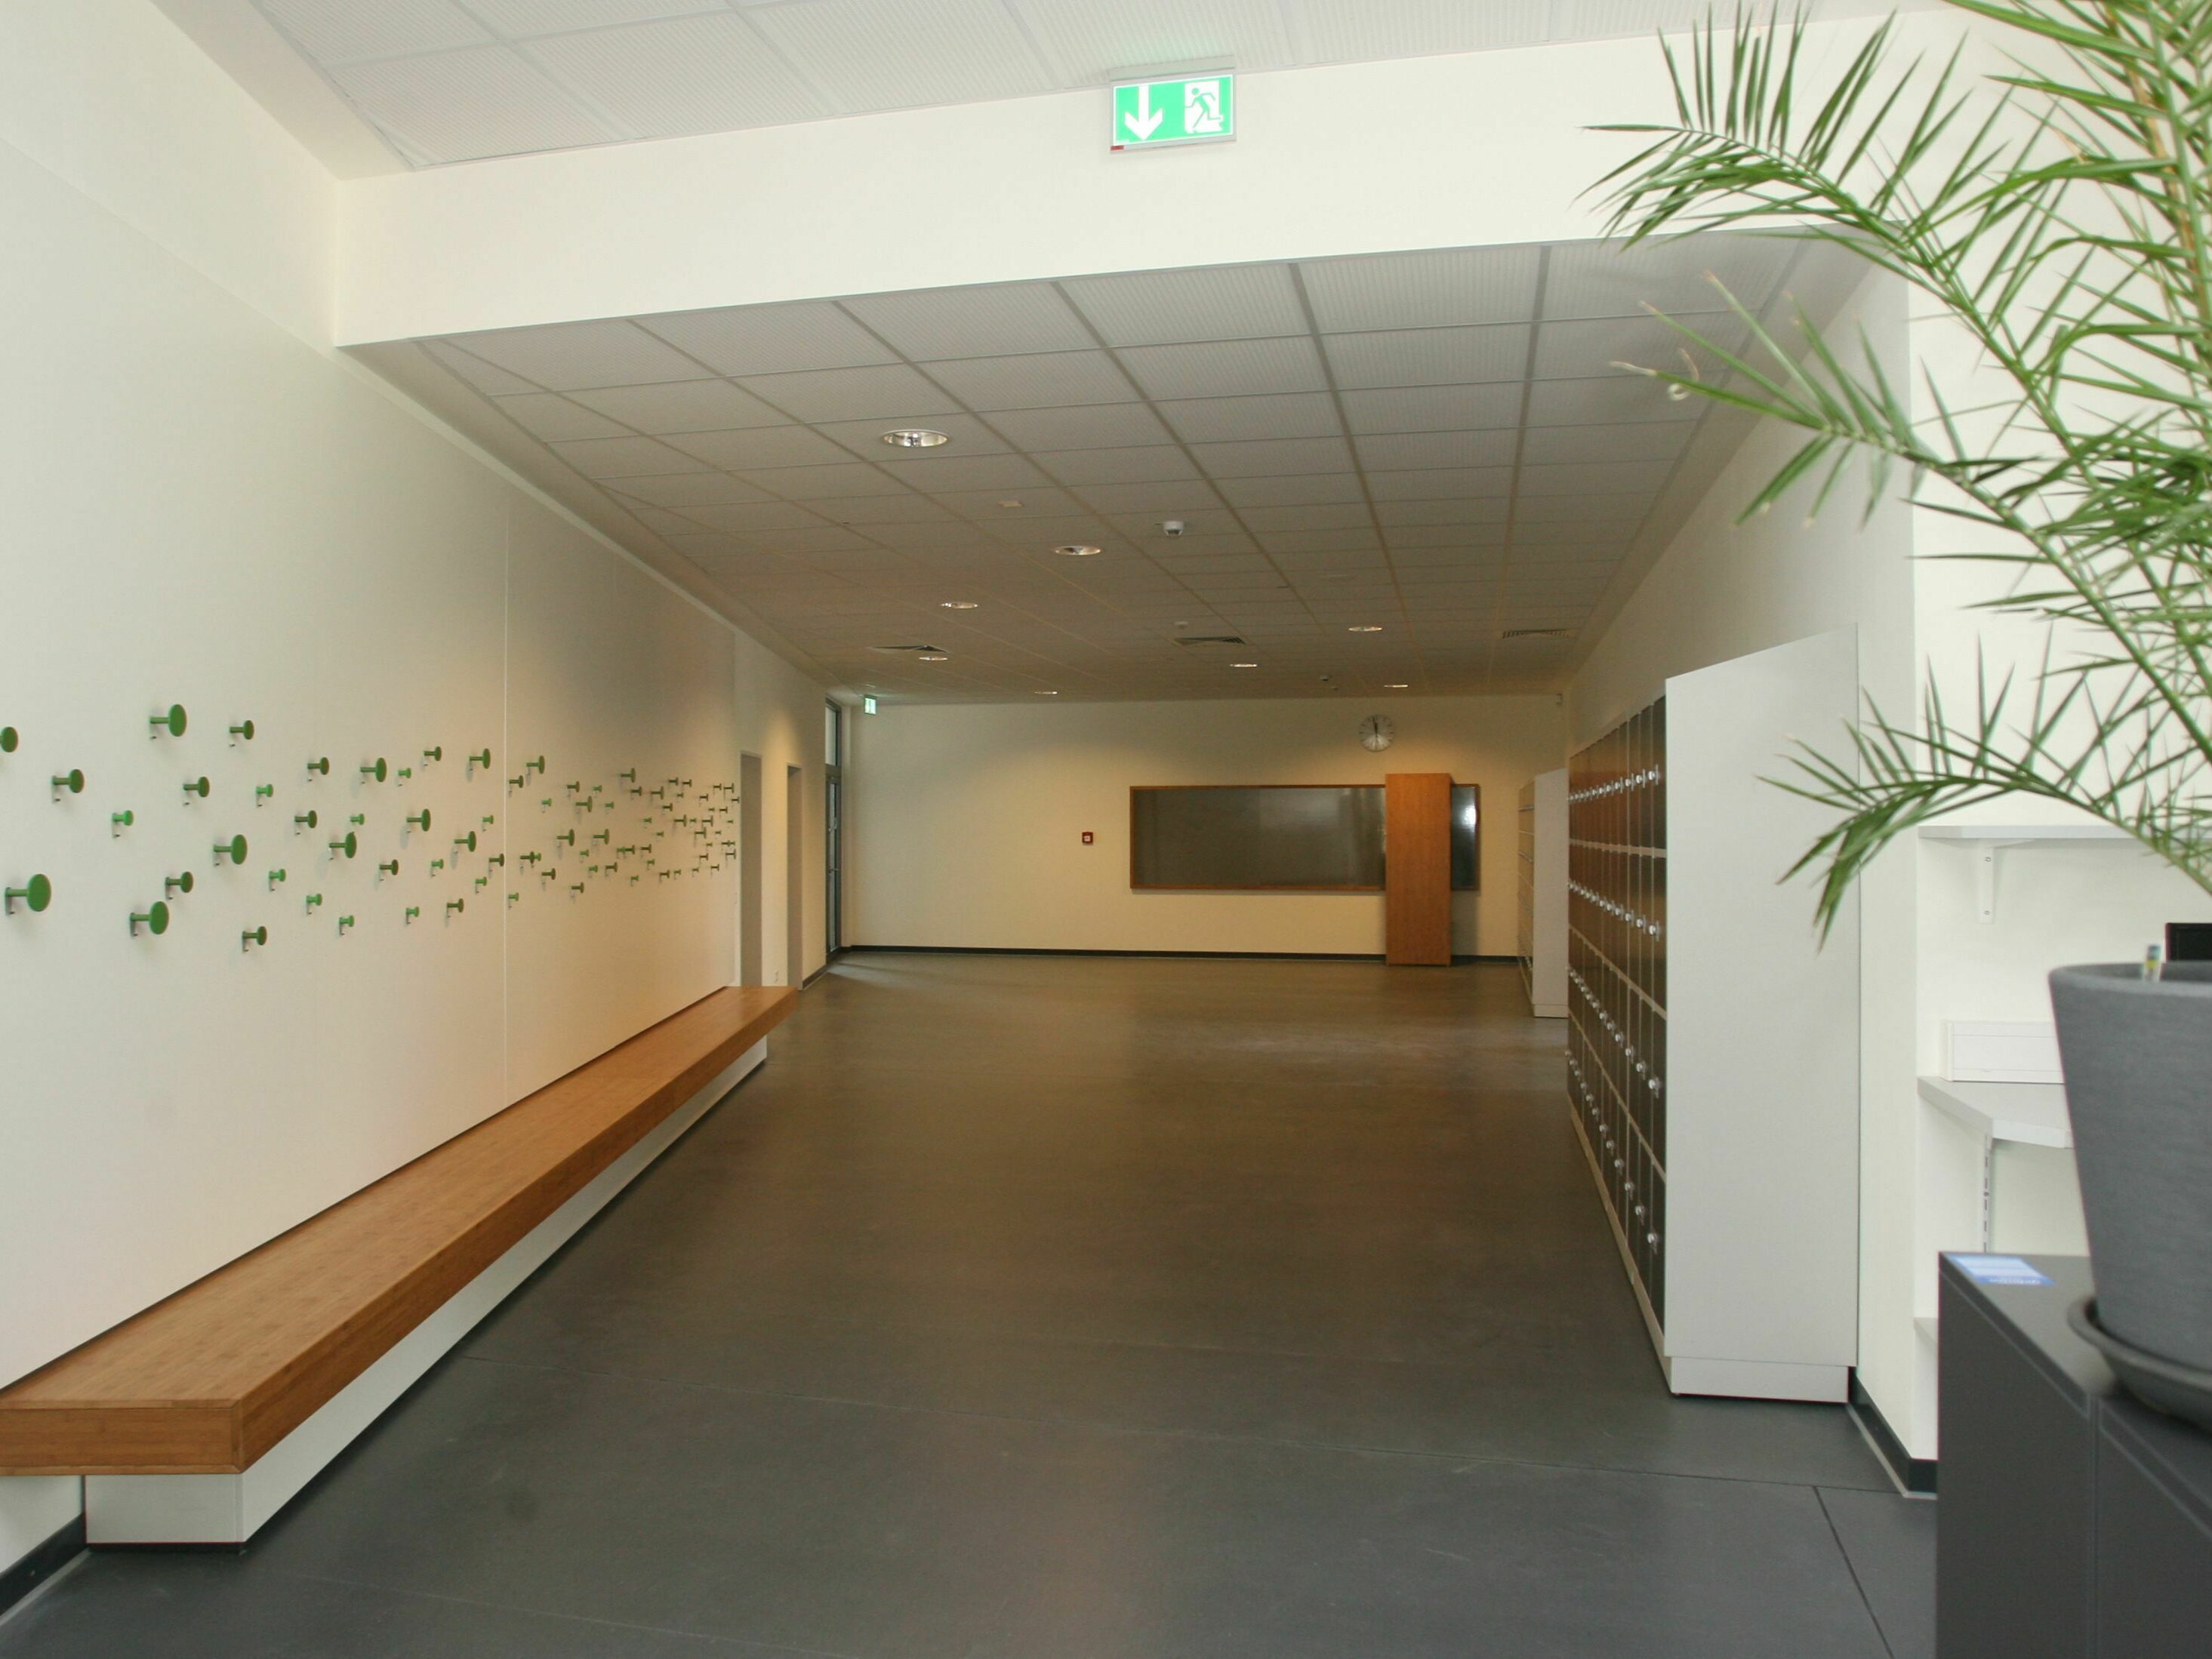 Eingangsbereich der Lernlandschaft in der Oberschule Lernhaus im Campus Osterholz-Scharmbeck